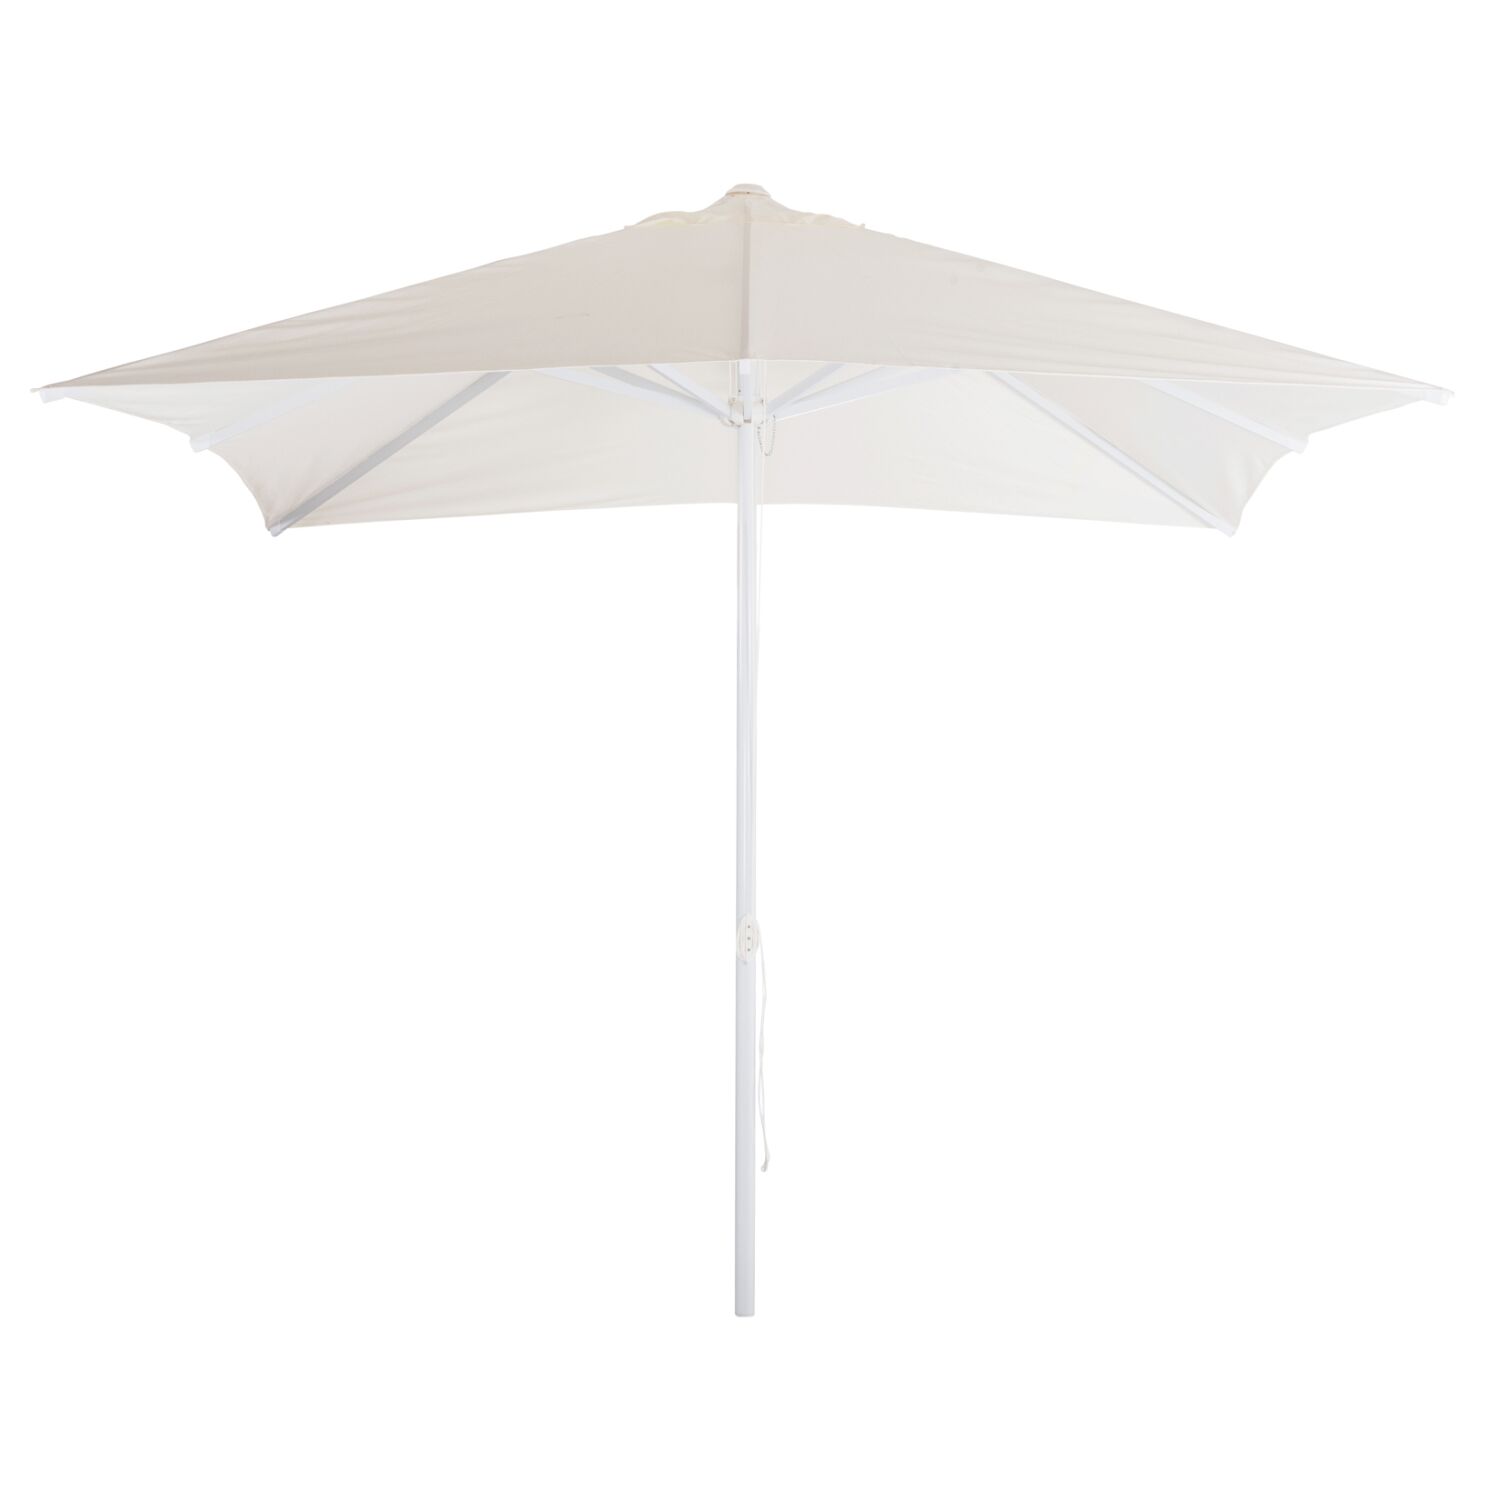 Professional Umbrella 3x3x2,83M Aluminum with cloth in beige color HM6026.01